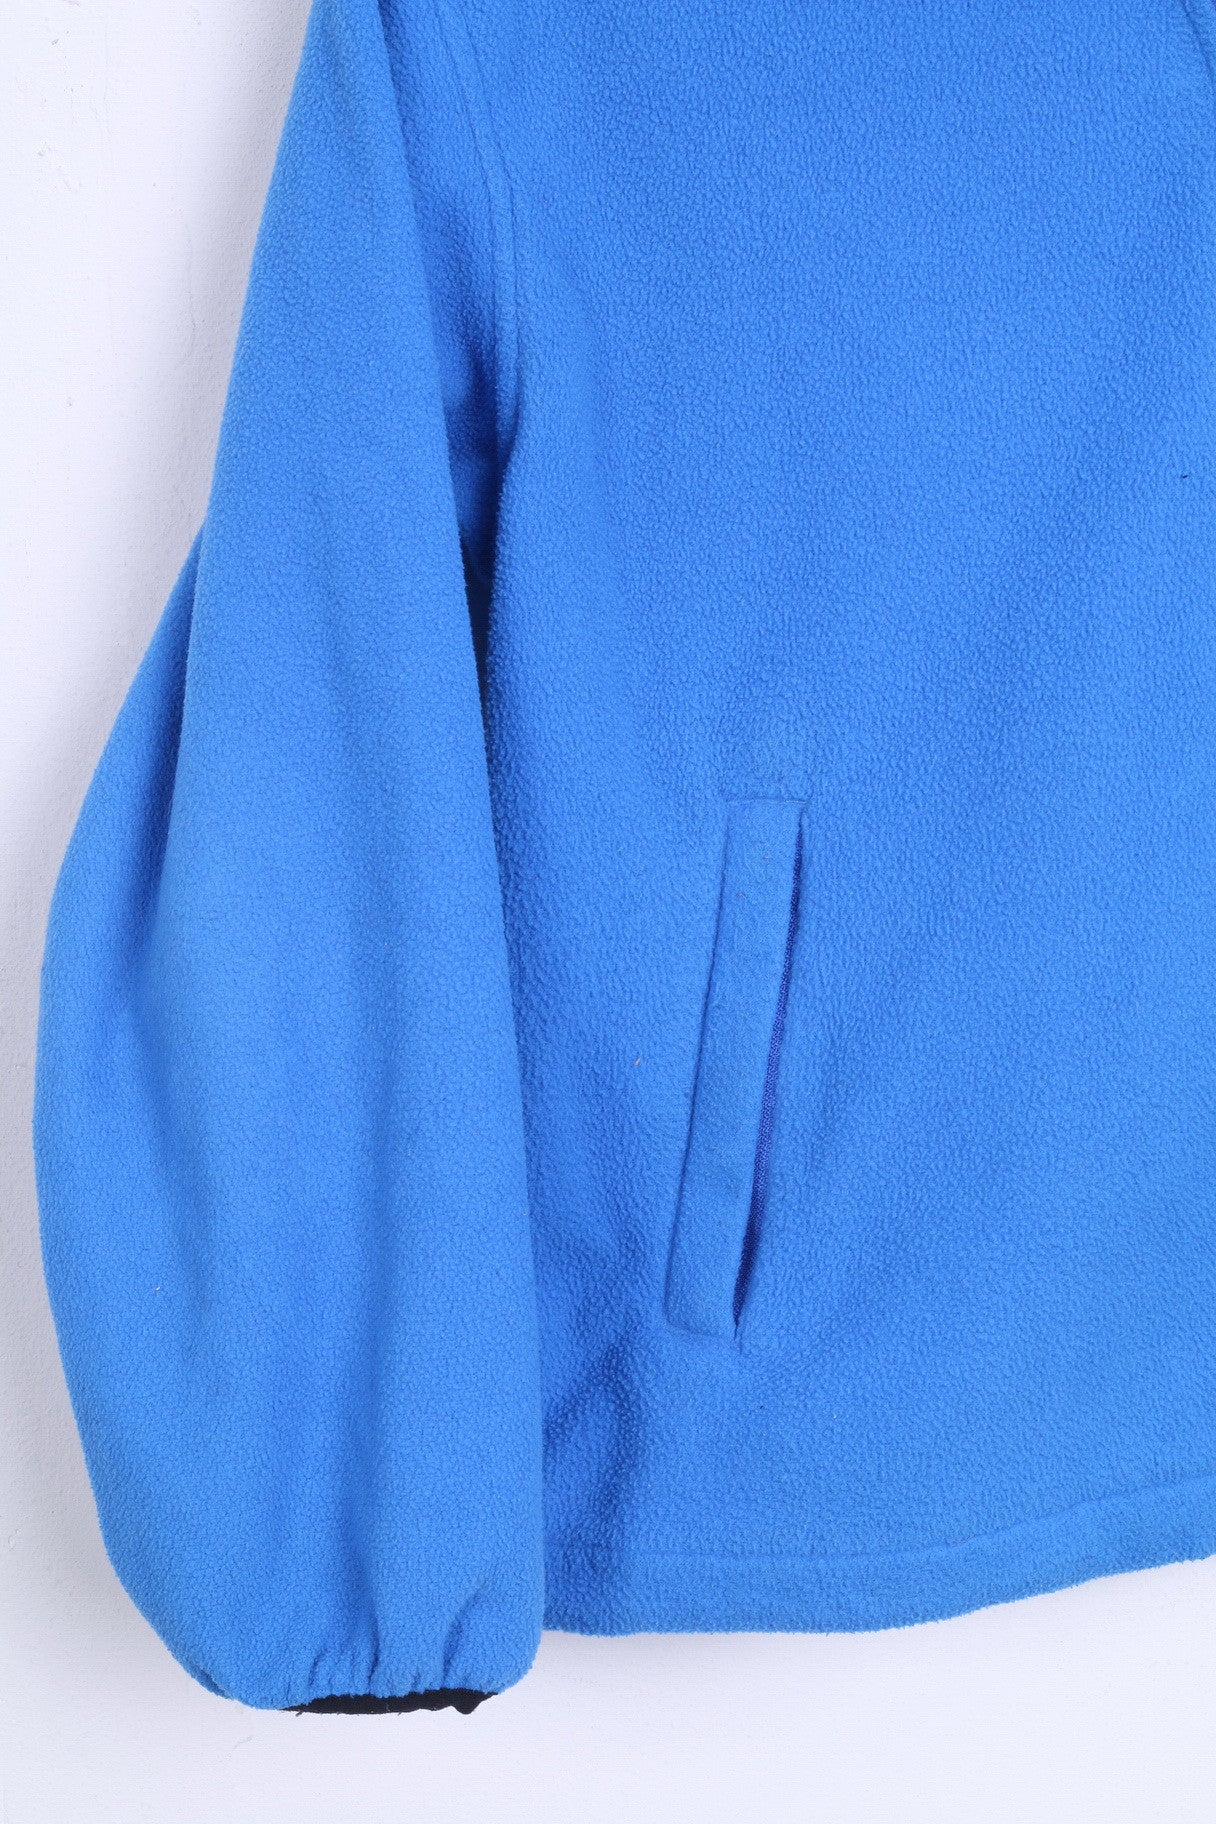 SKOGSTAD Womens 8 S Fleece Top Blue Sweatshirt Jumper - RetrospectClothes